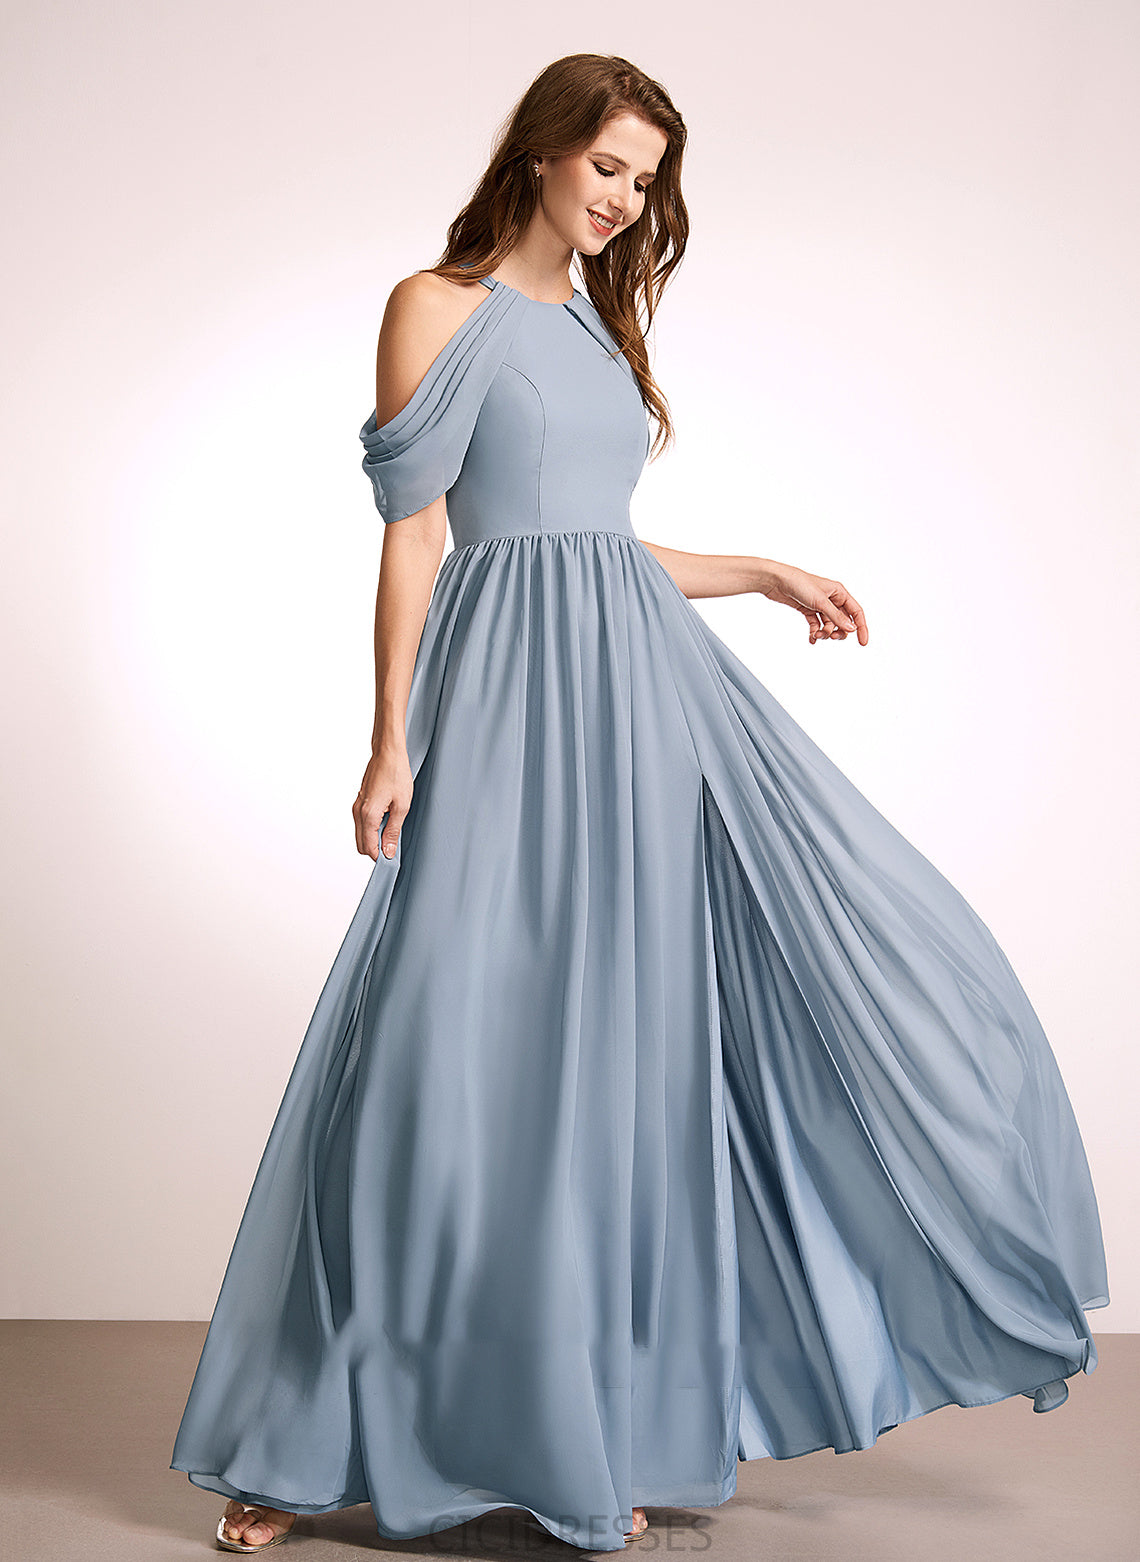 Neckline Straps Silhouette A-Line HighNeck Fabric Length Floor-Length Tiana Sleeveless Natural Waist A-Line/Princess Bridesmaid Dresses